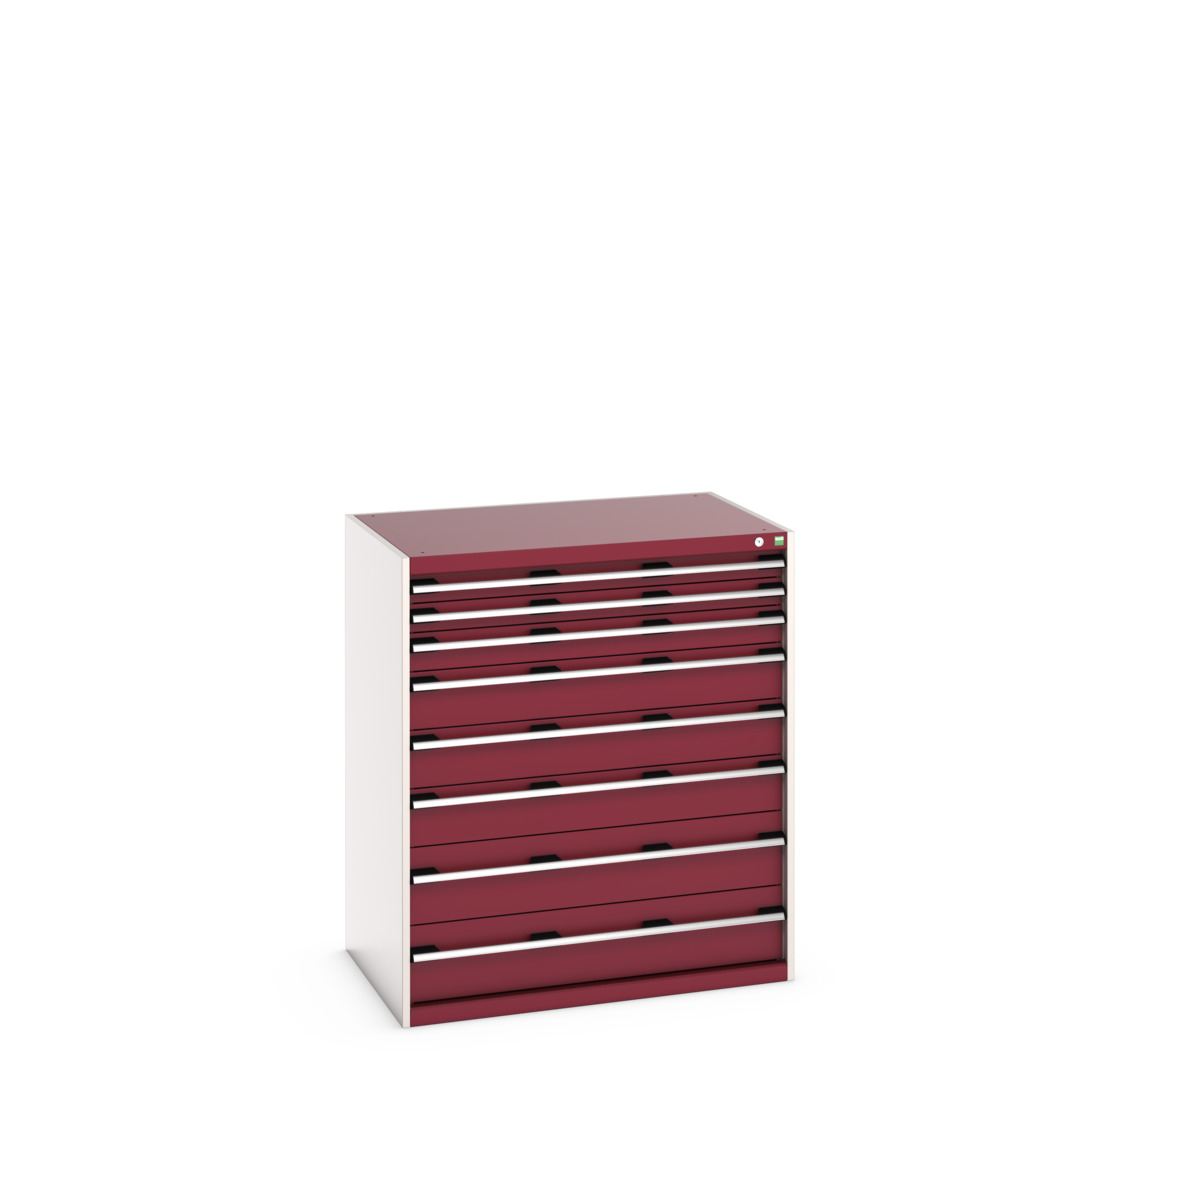 40029031.24V - cubio drawer cabinet